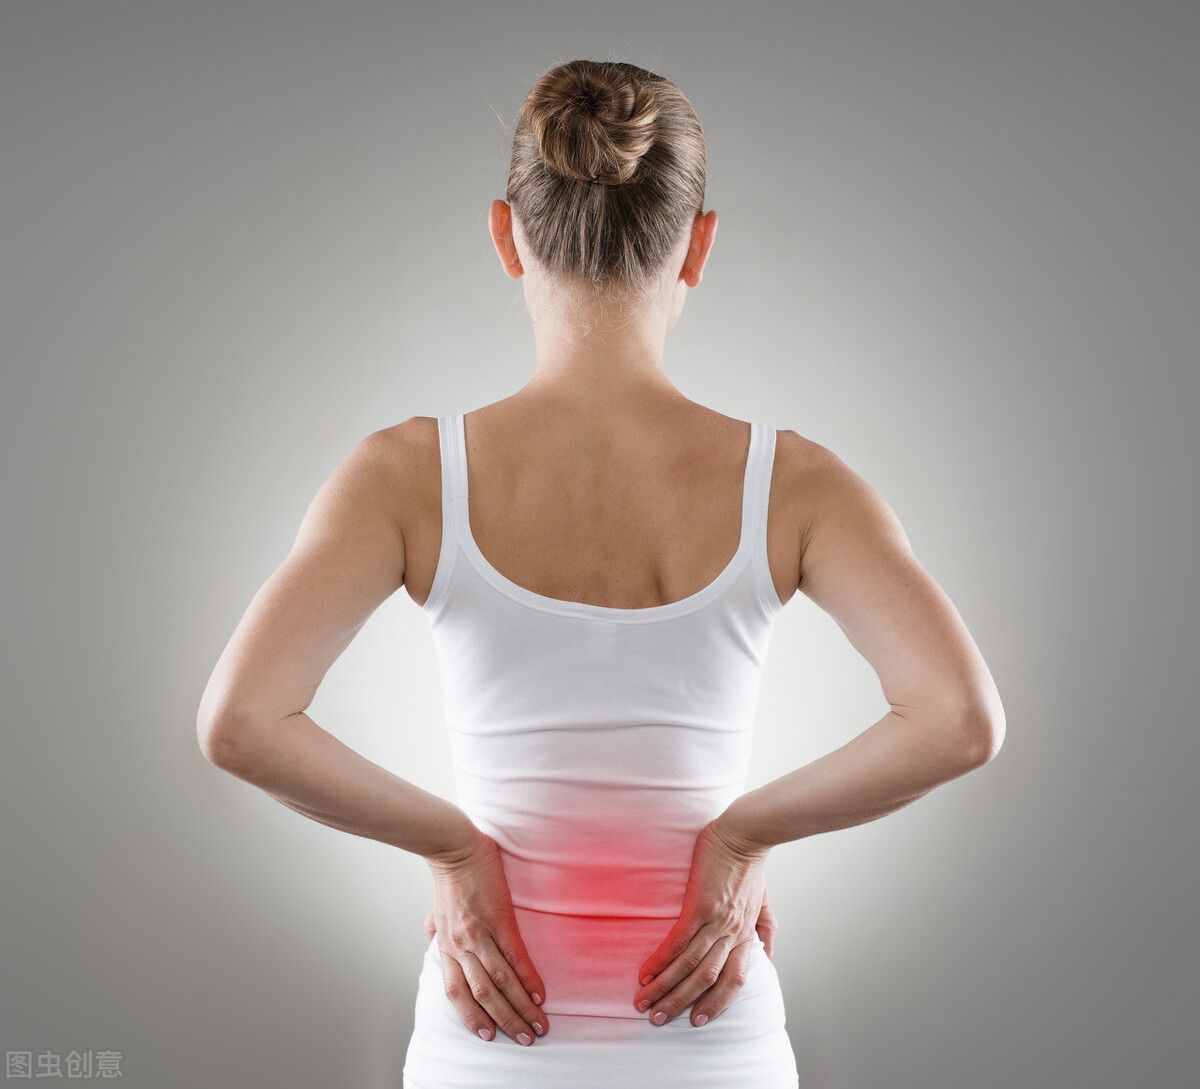 3个高效腰部训练动作，全面强壮腰部力量，有效防止腰部疼痛受伤